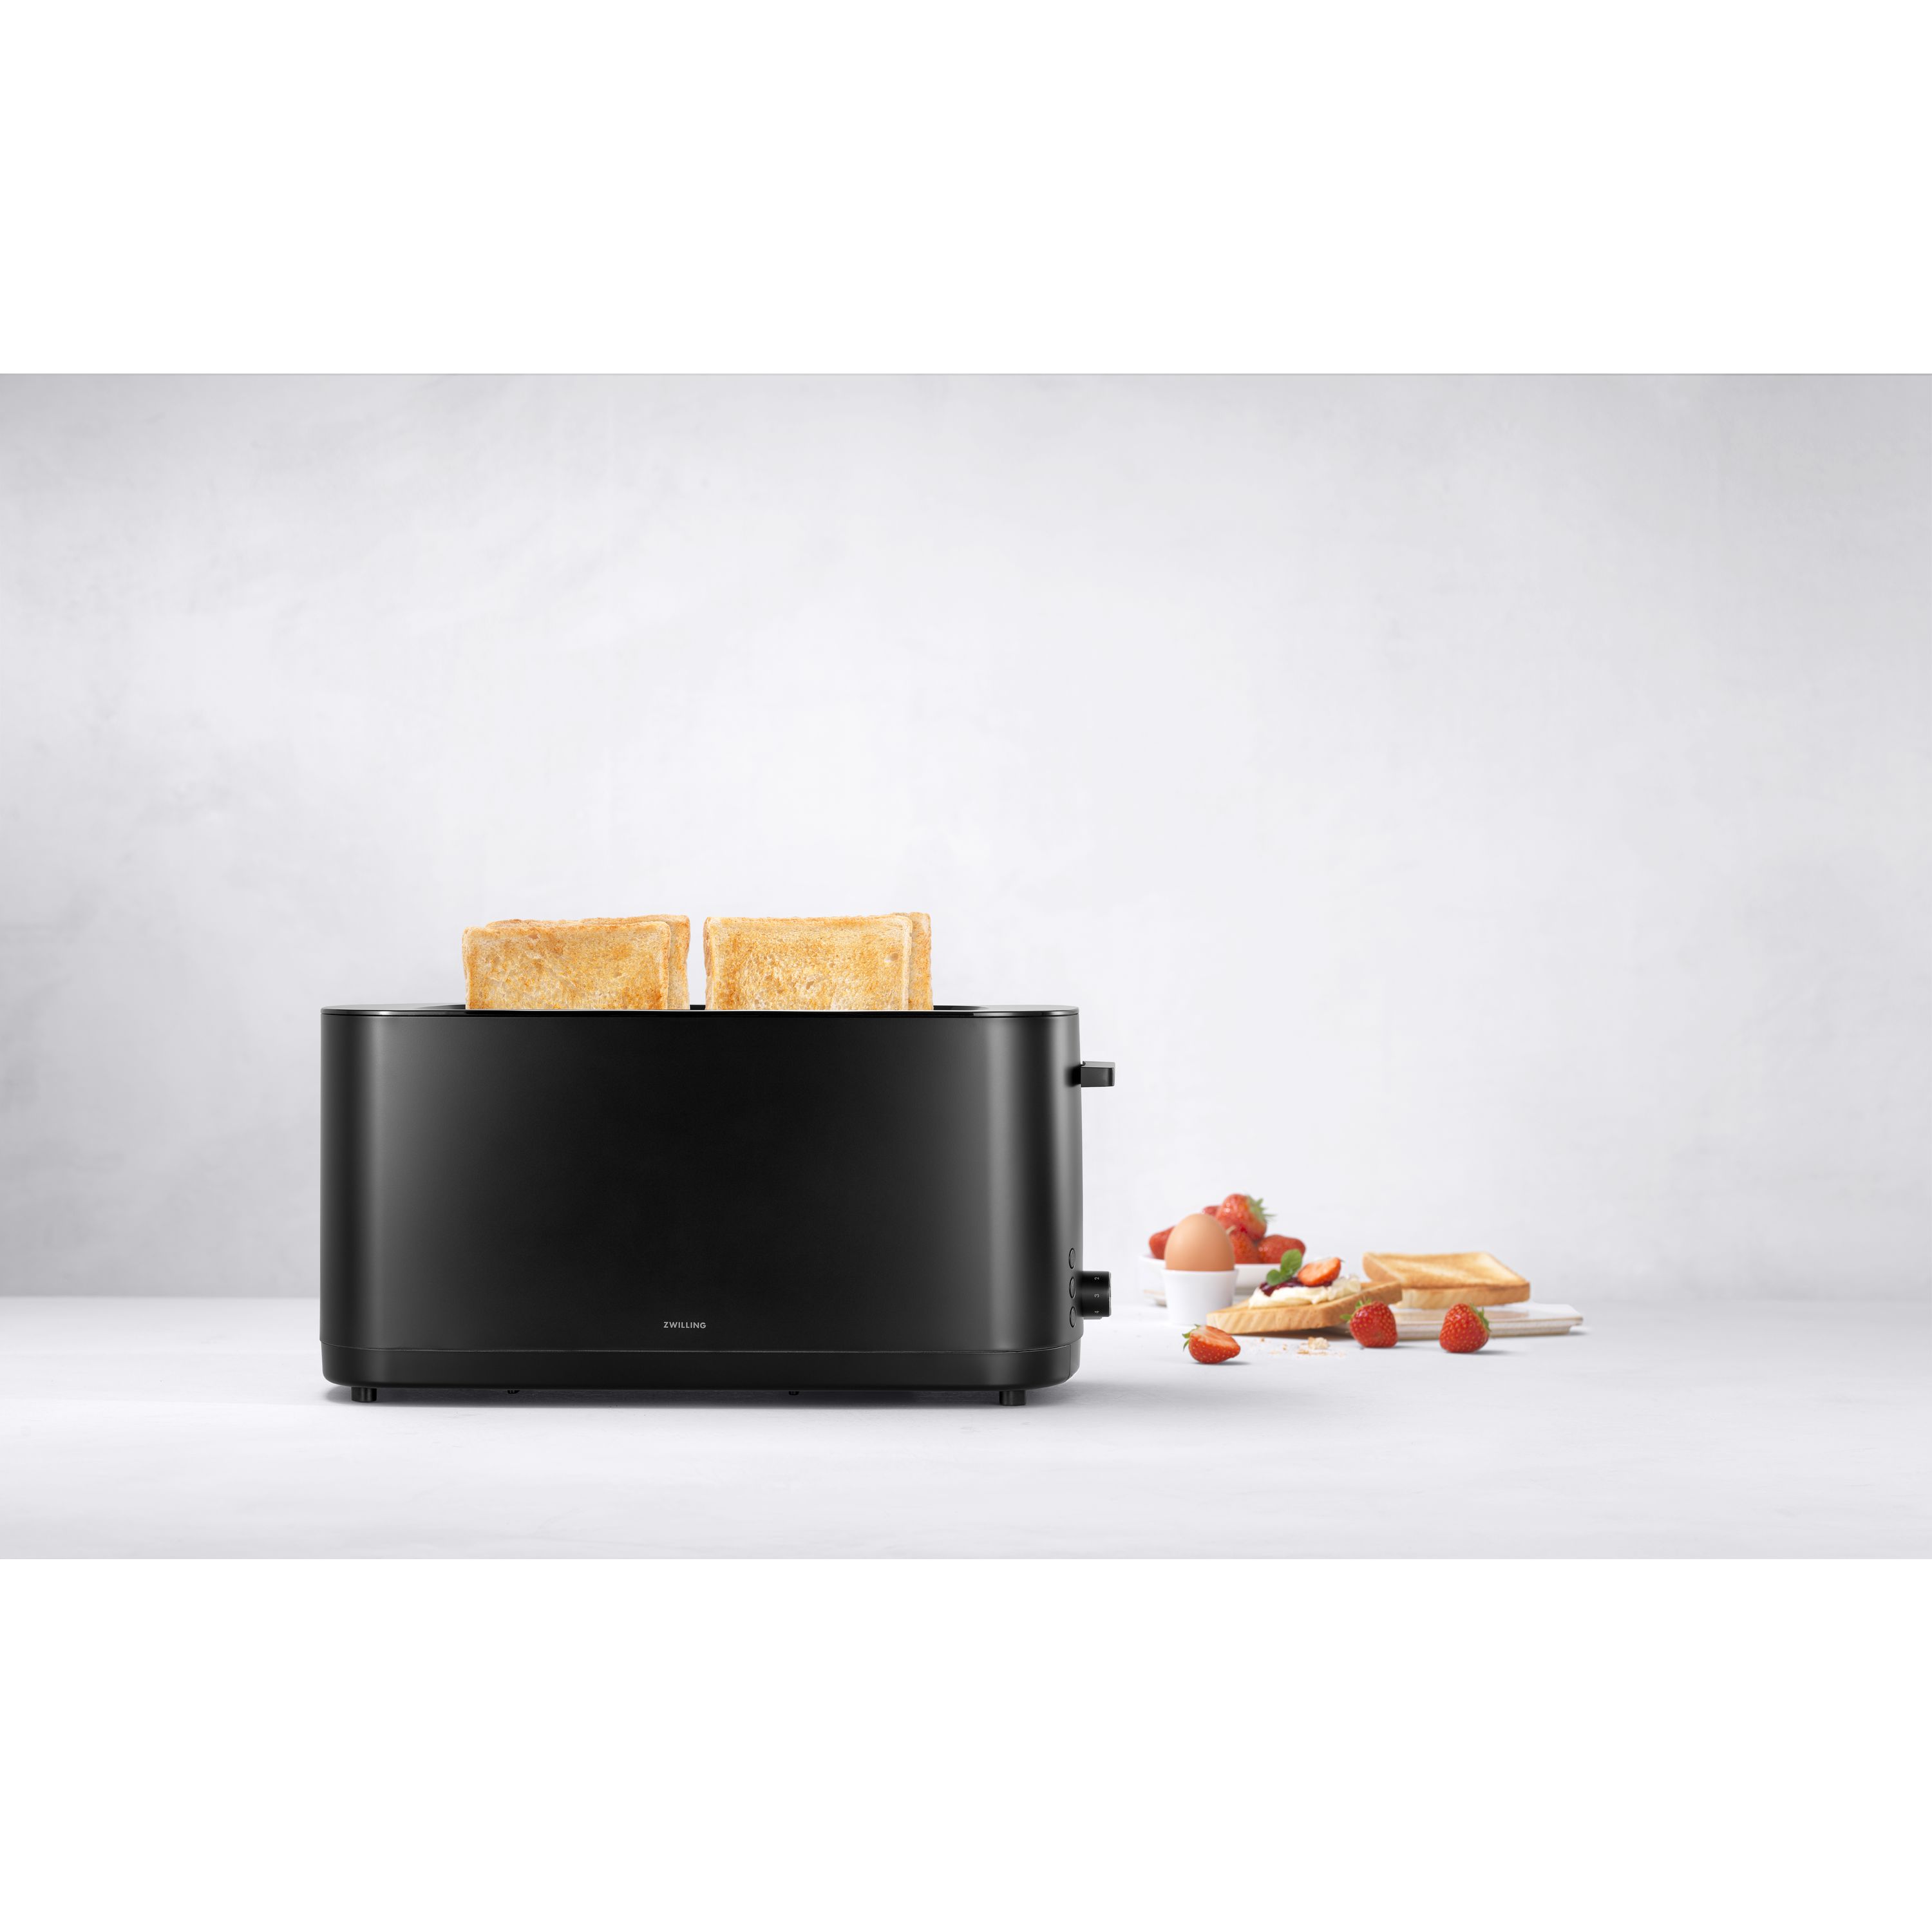 Zwilling - Enfinigy Toaster - 2 Long Slot (Black)